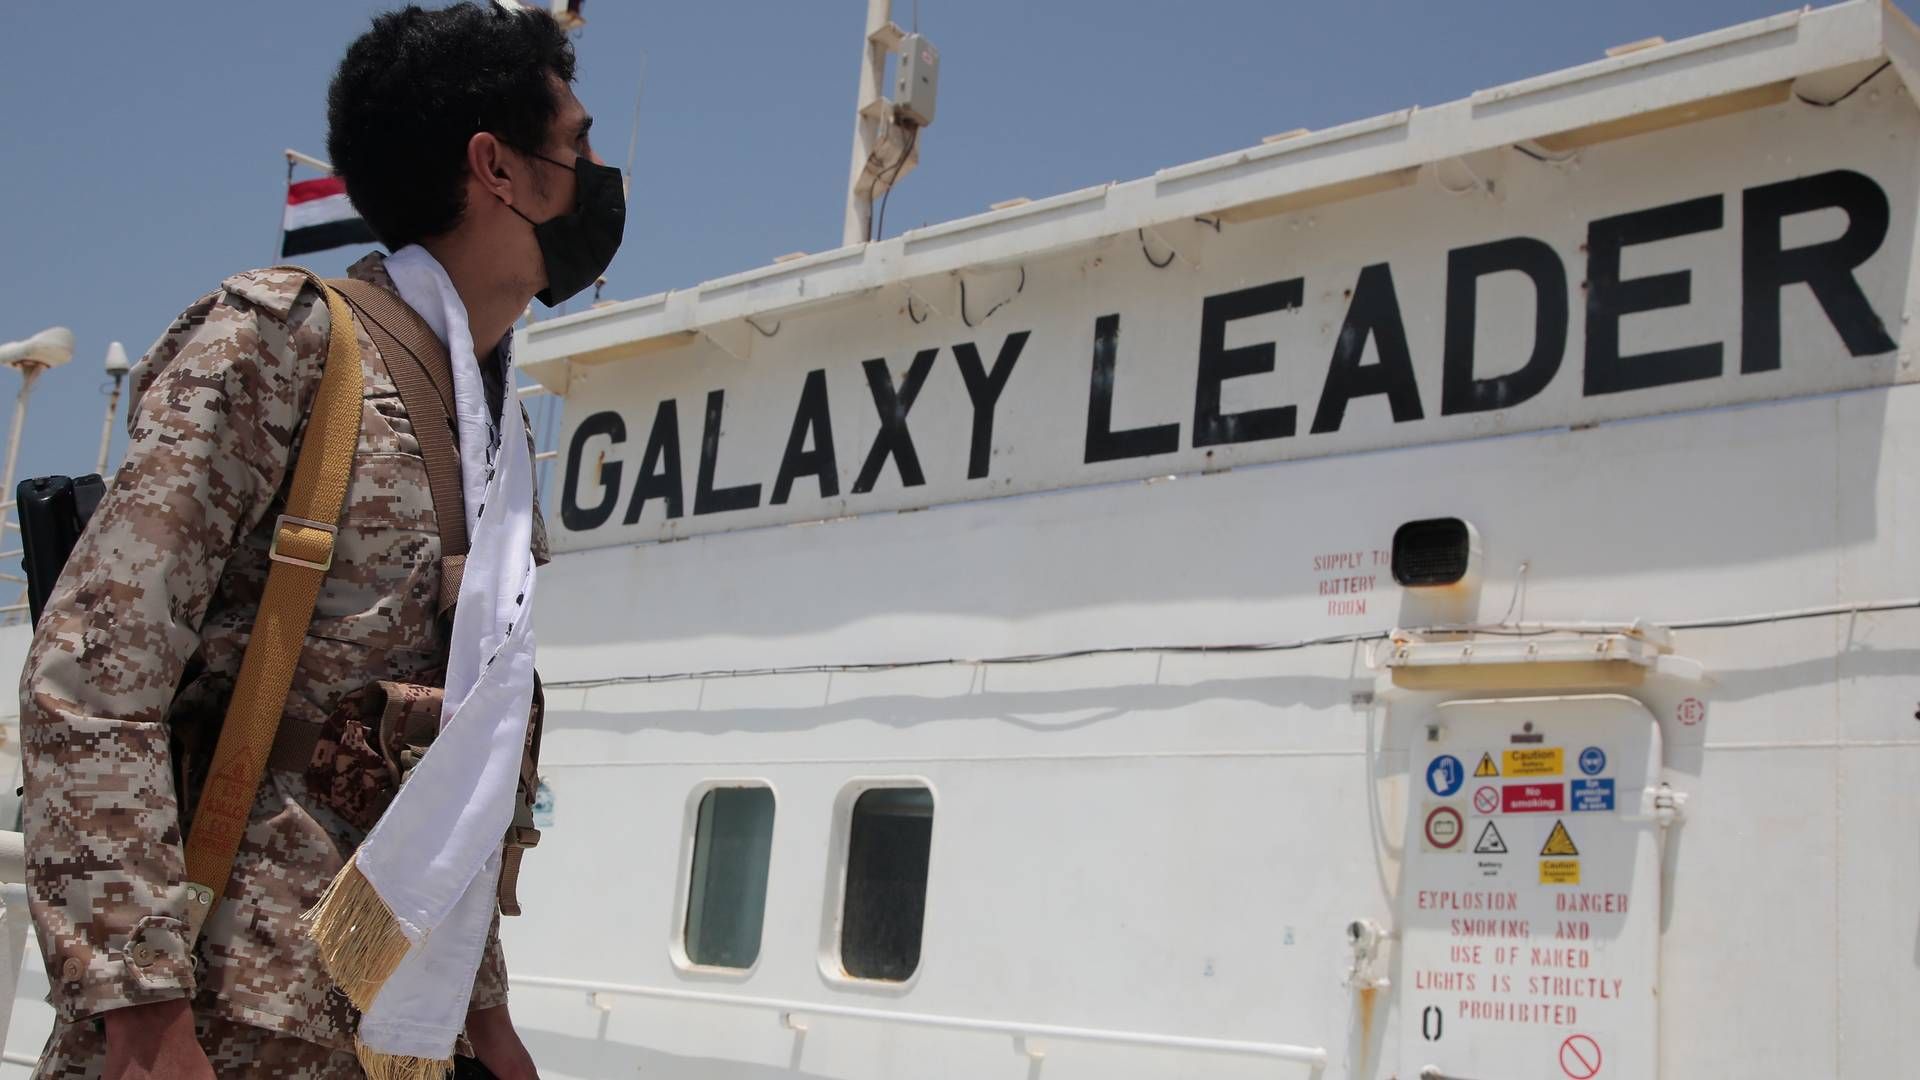 Galaxy Leader var det første skib, der blev angrebet af houthierne i Det Røde Hav nær Yemen. | Foto: Osamah Abdulrahman/AP/Ritzau Scanpix